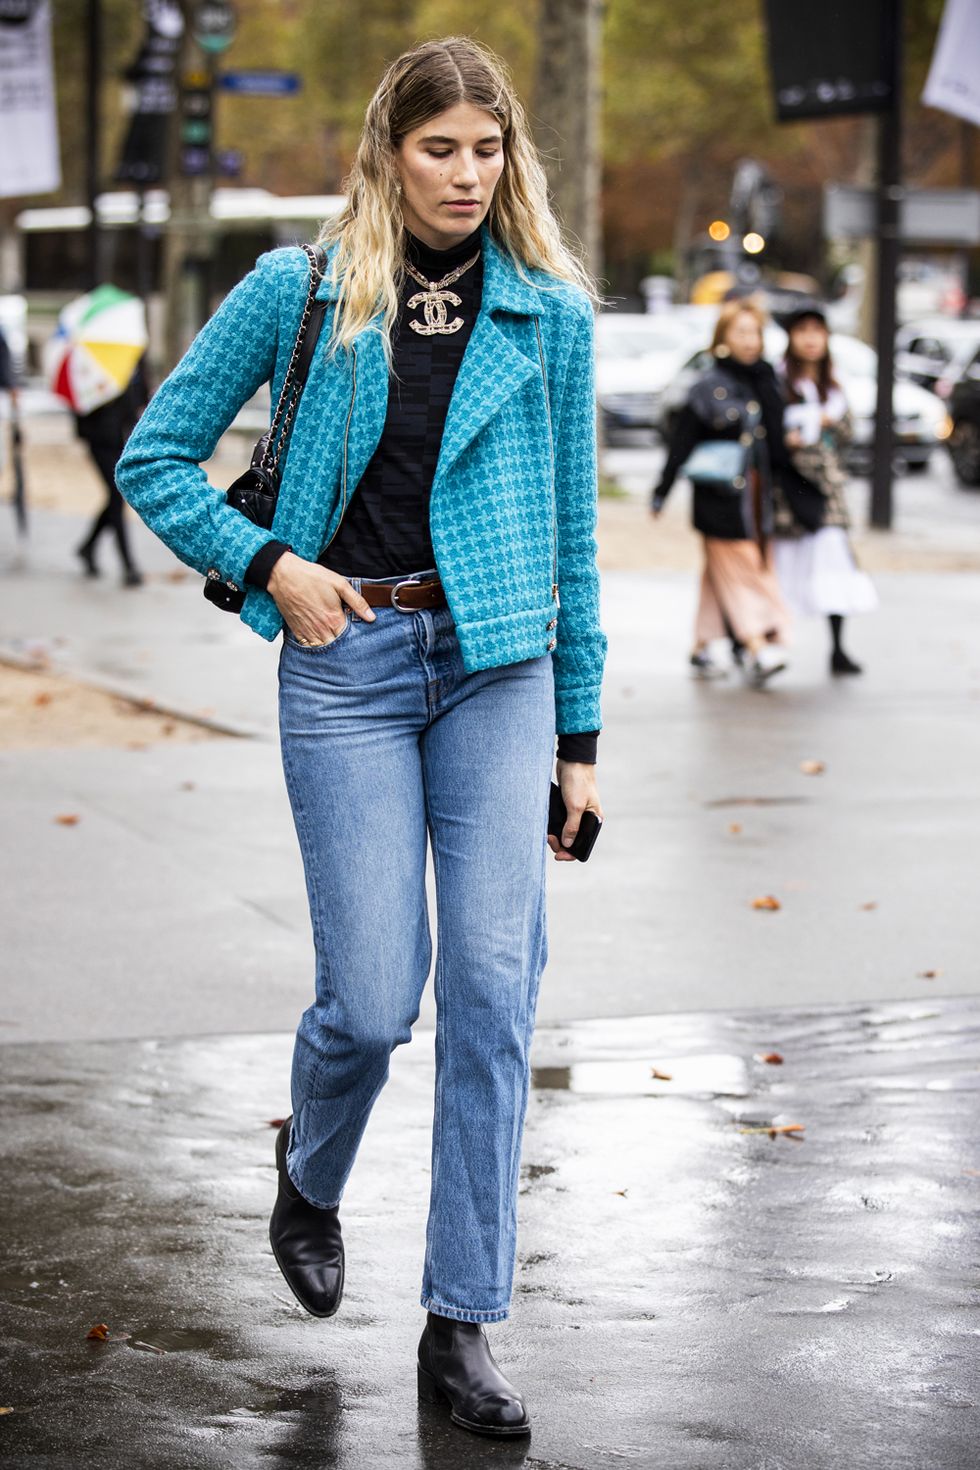 jeans moda inverno 2019 jeans donna amazon 